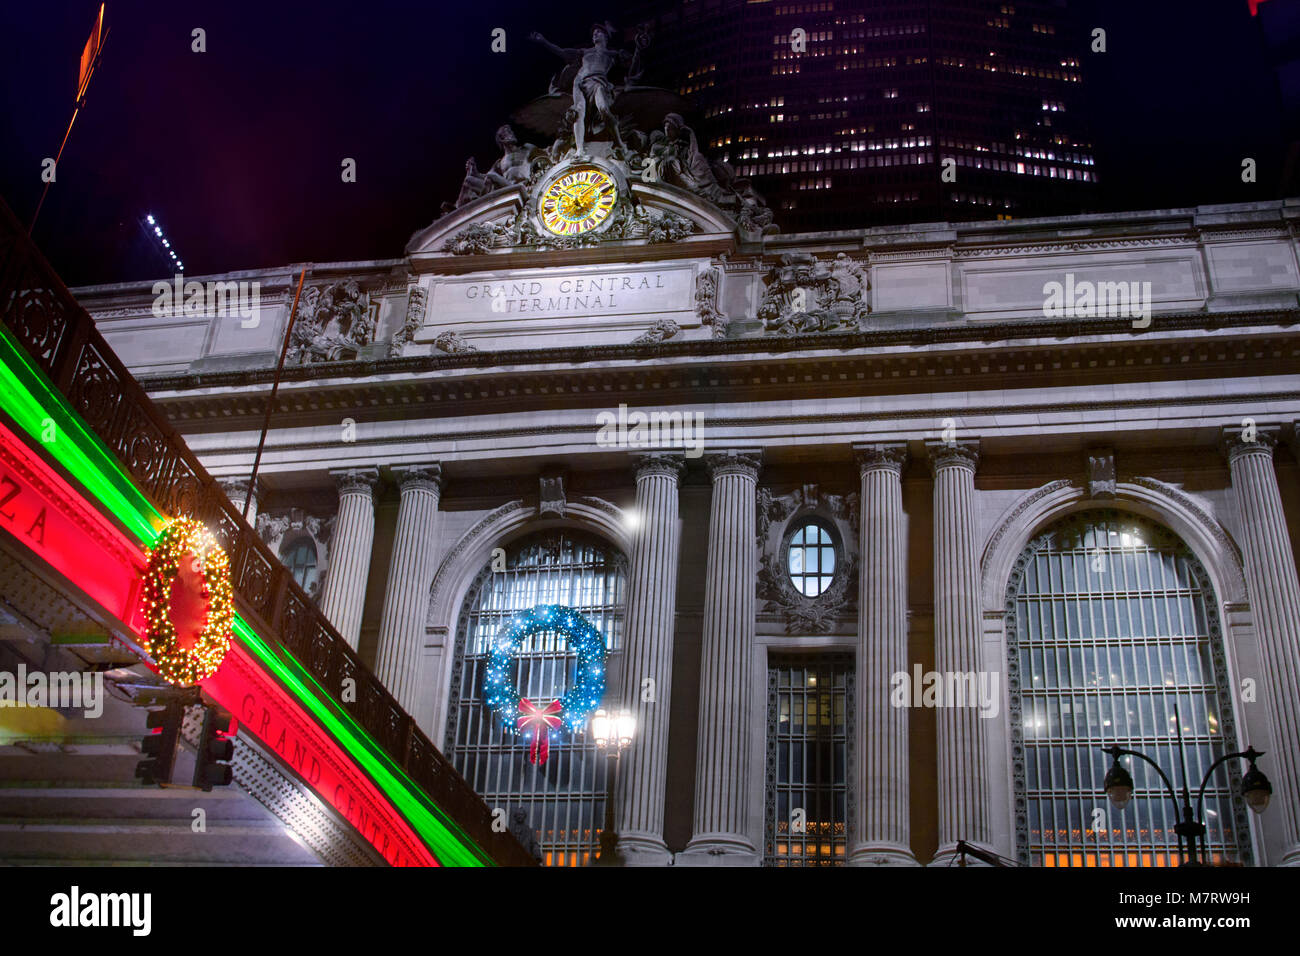 La stagione di Natale in pieno svolgimento al Grand Central Terminal di New York City. Foto Stock